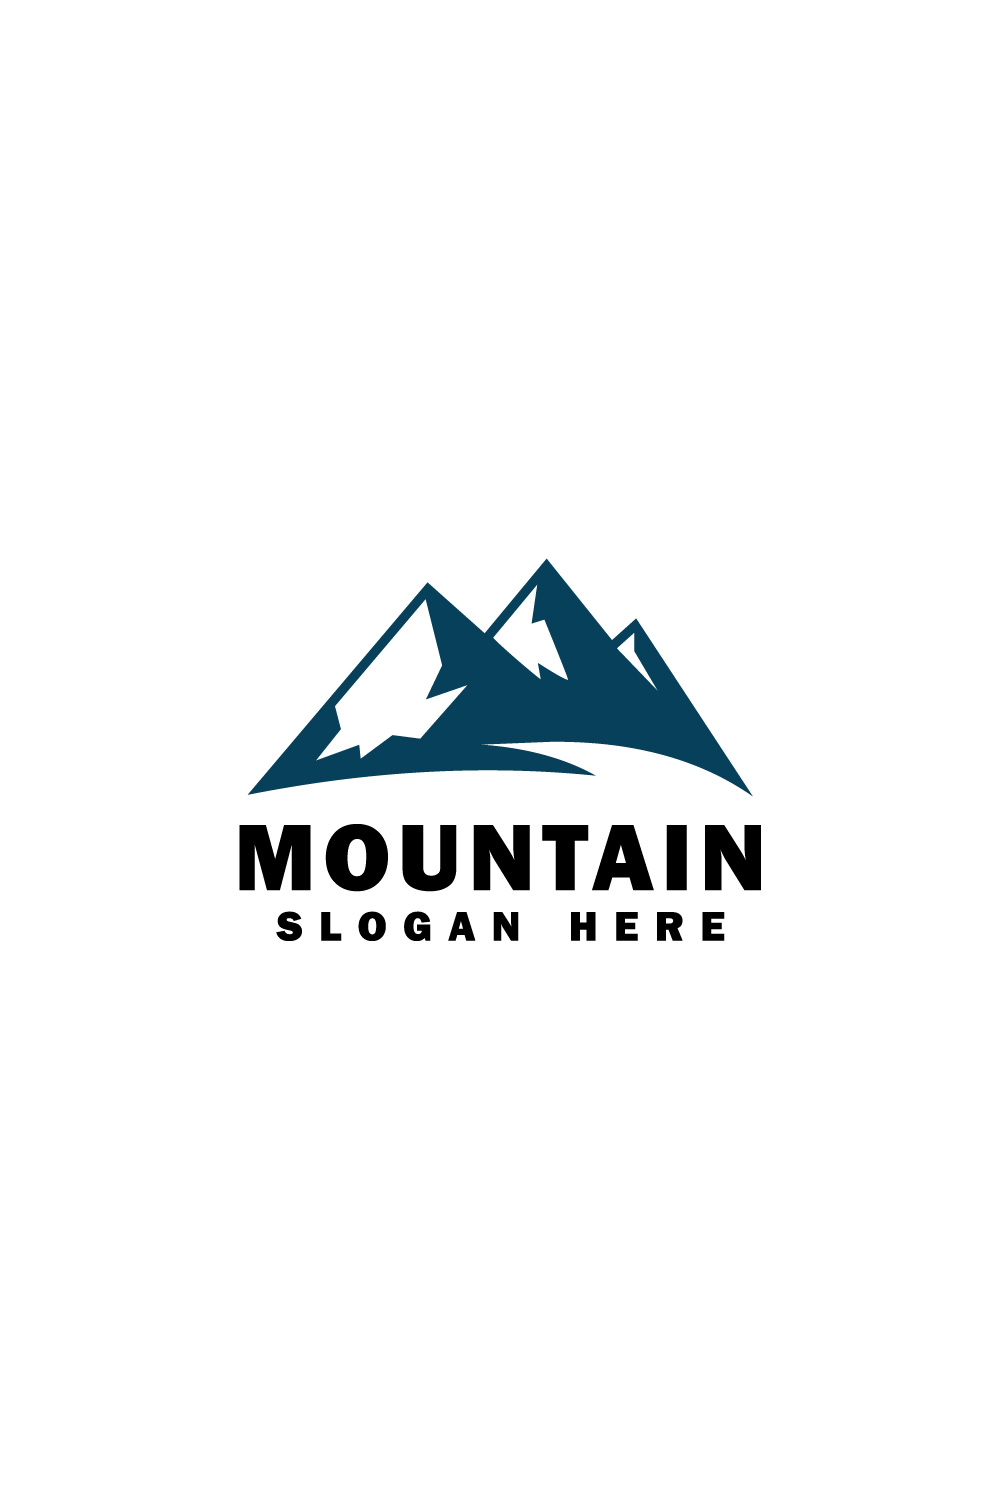 mountain logo vector pinterest preview image.